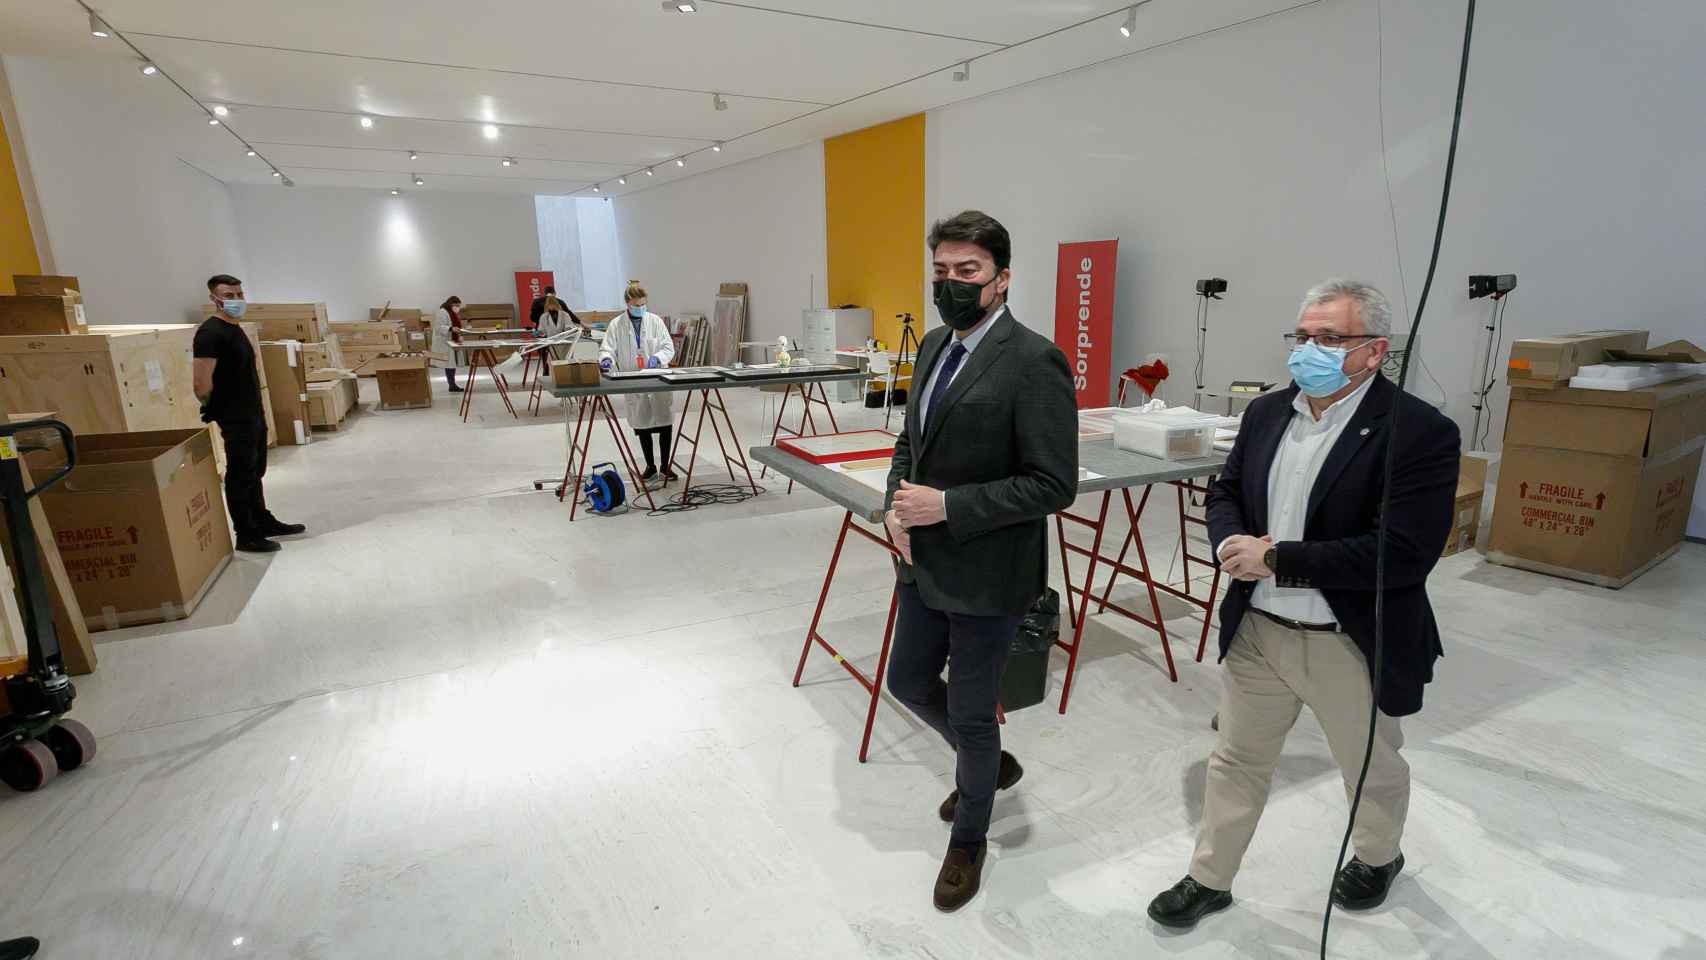 Barcala y Antonio Manresa, en la sala de exposiciones temporales ocupada para este montaje.